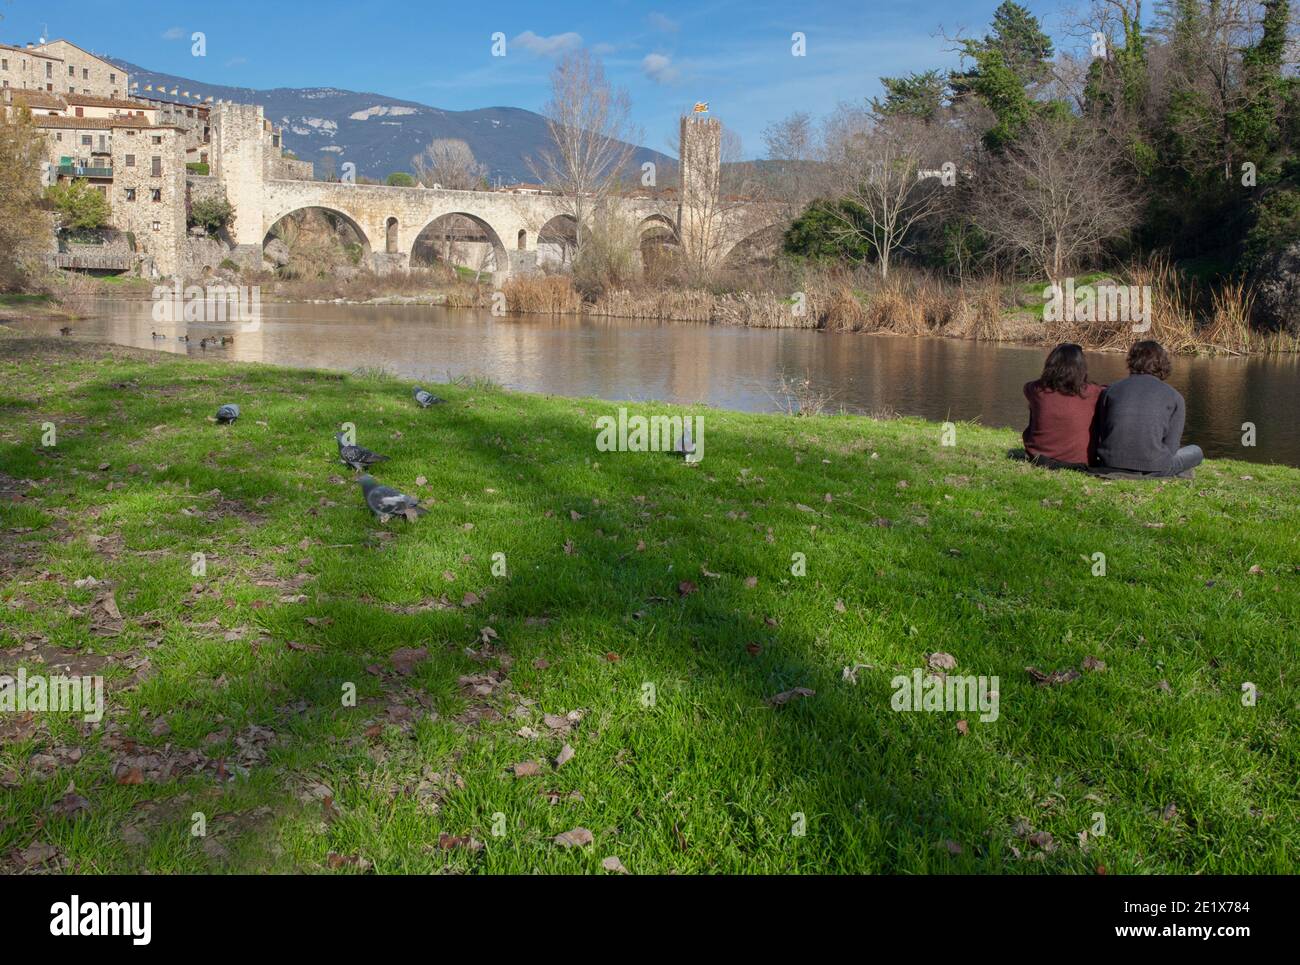 Besalu, Espagne - 28 décembre 2019: Rivière Fluvia avec pont médiéval au fond, Besalu. Garrotxa, Gérone, Catalogne, Espagne Banque D'Images